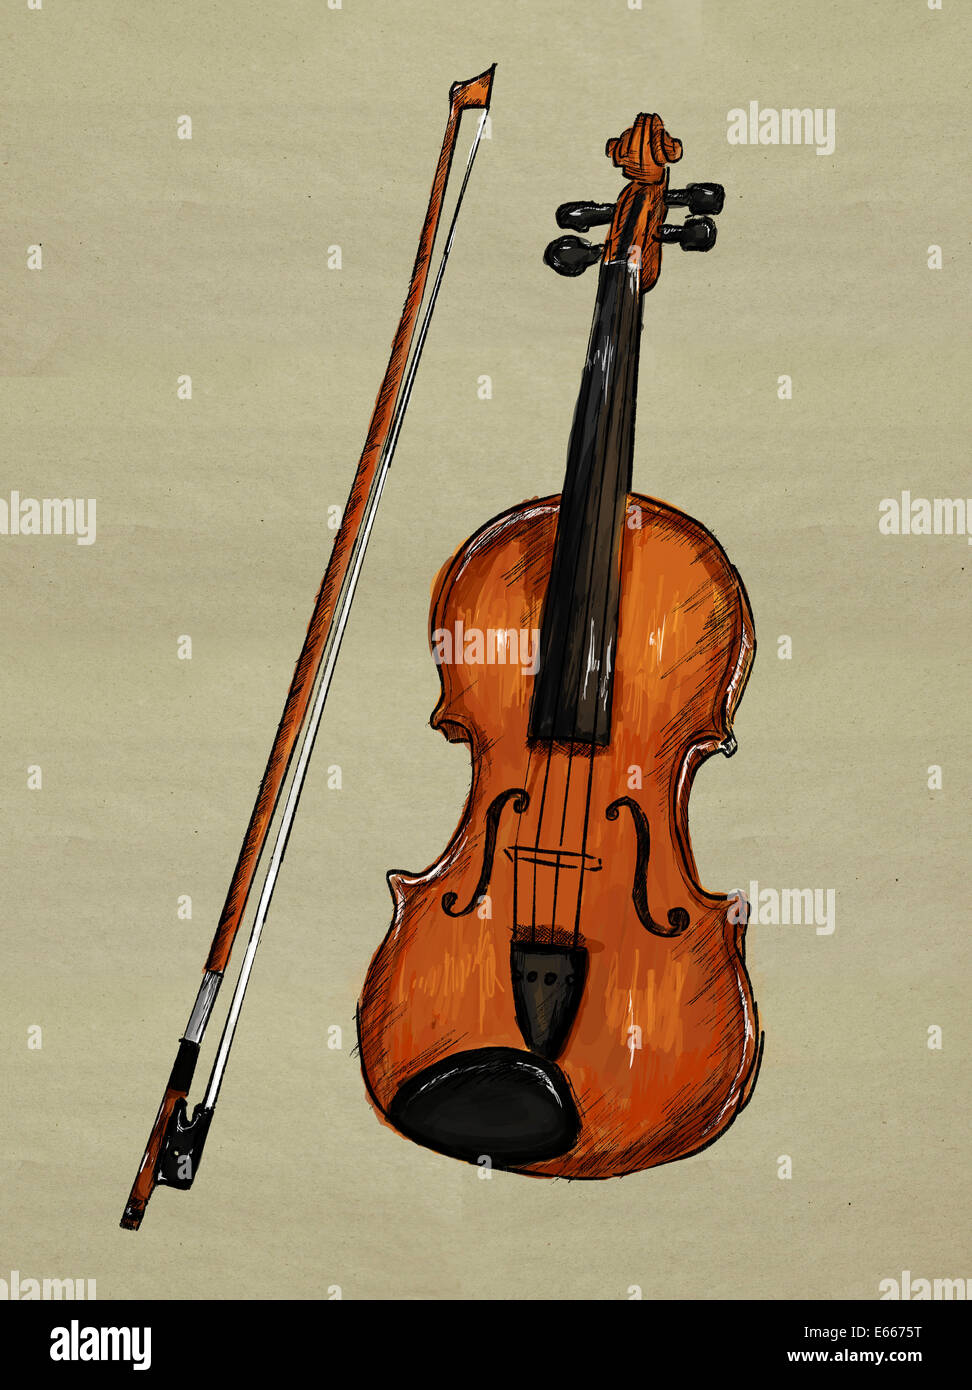 Image Peinture violon - fond de musique Banque D'Images